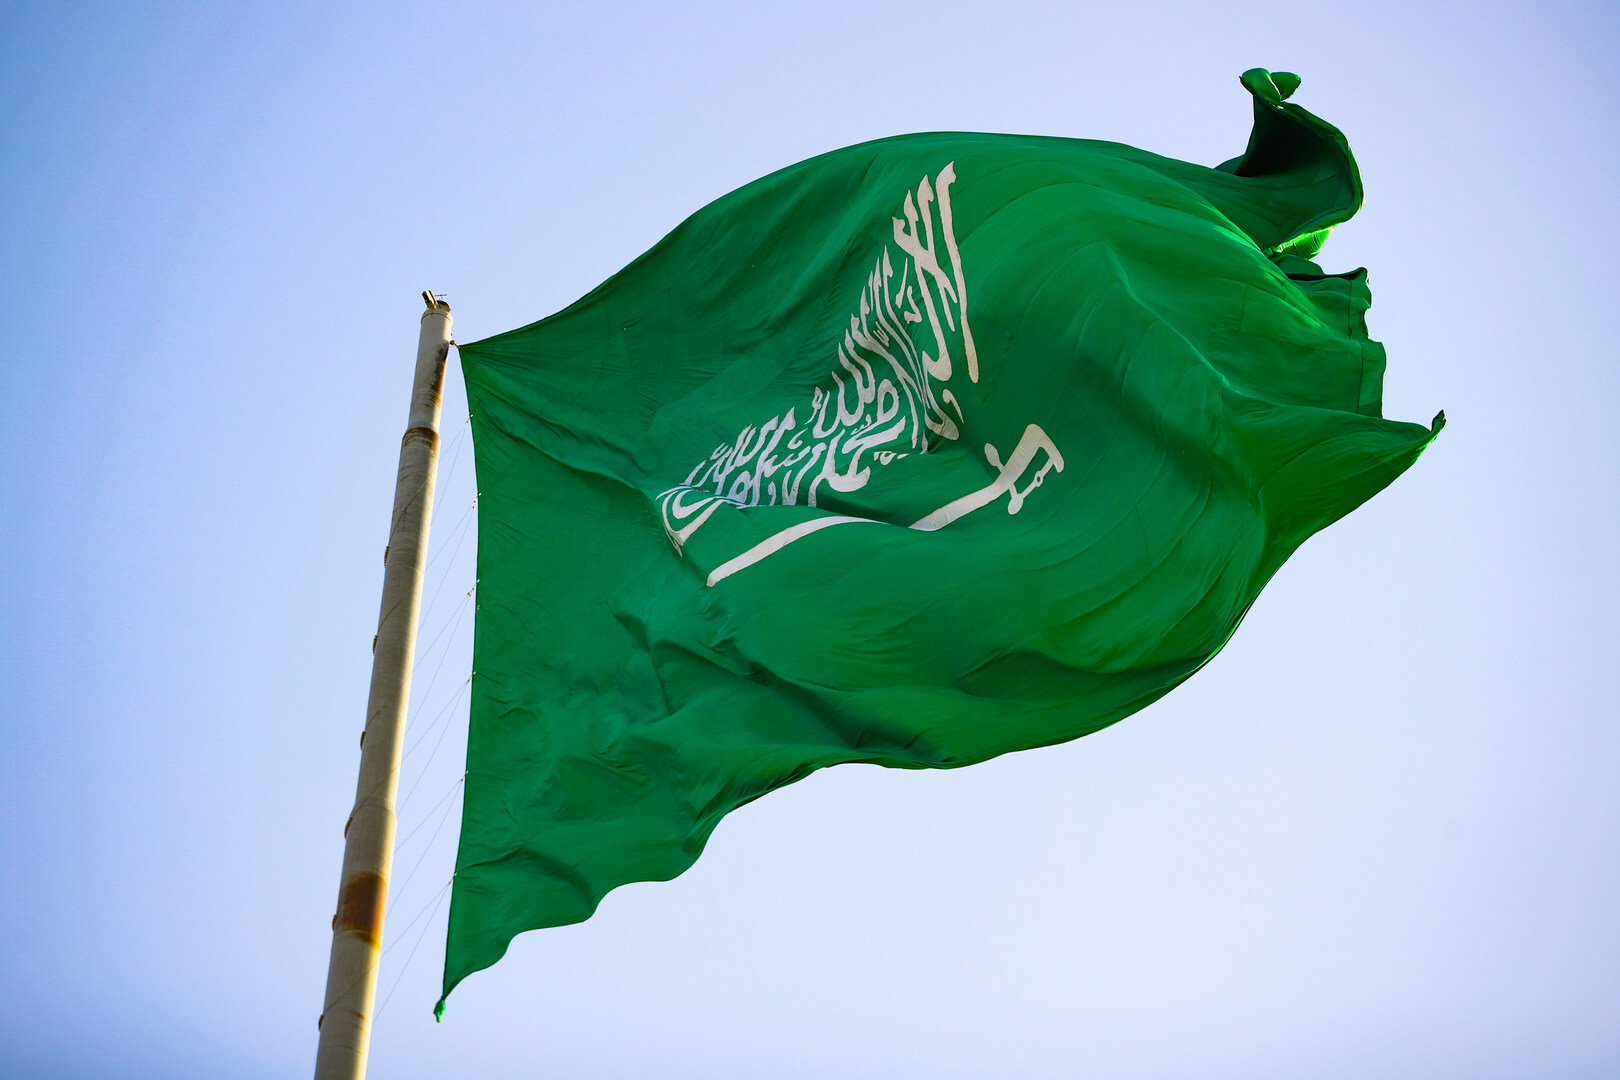 السعودية.. صندوق الاستثمارات العامة يعلن تأسيس شركة جديدة ويكشف أهدافها